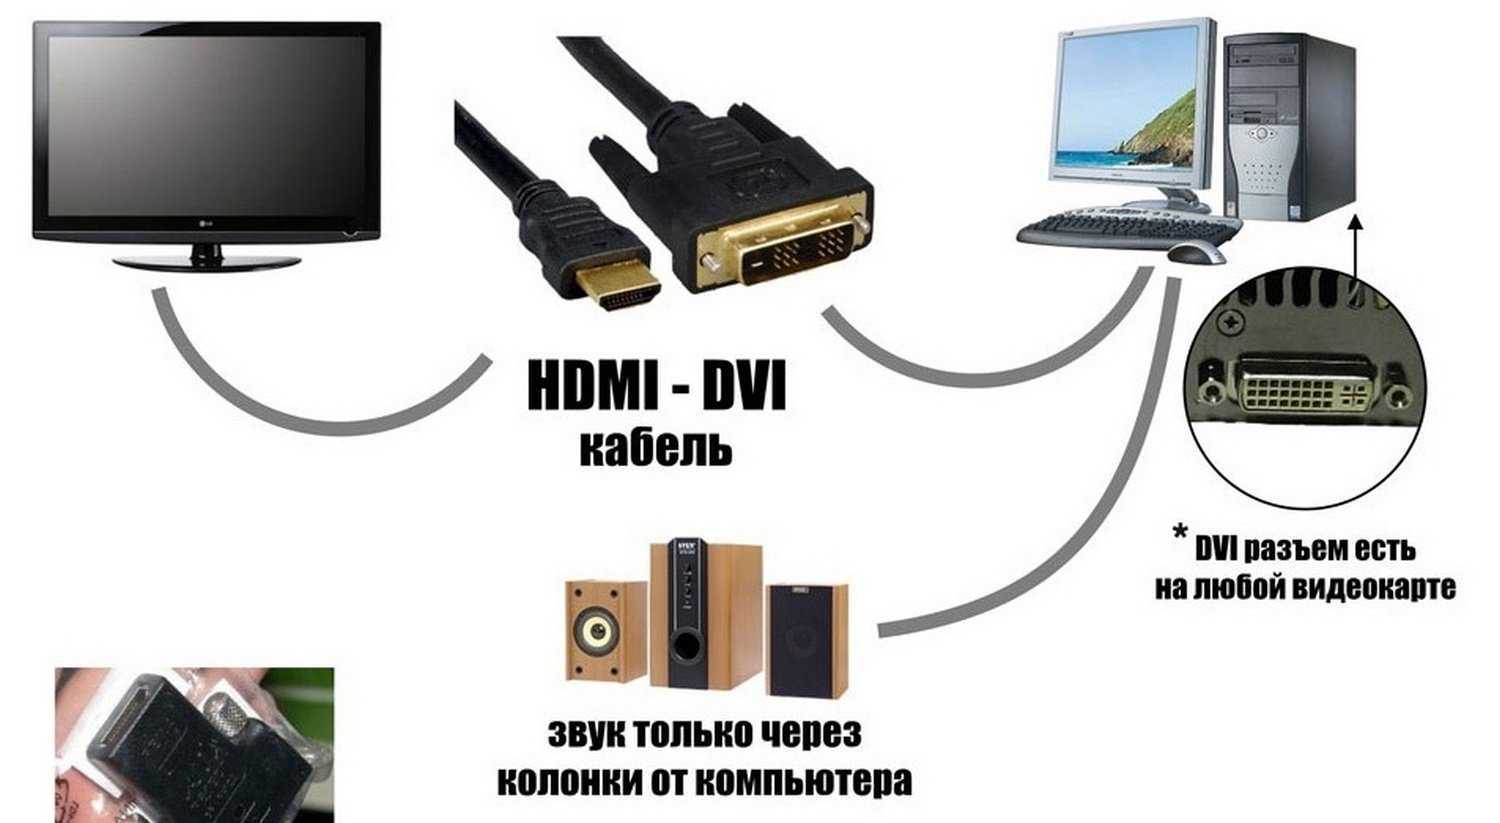 Как вывести изображение с макбука на телевизор через hdmi